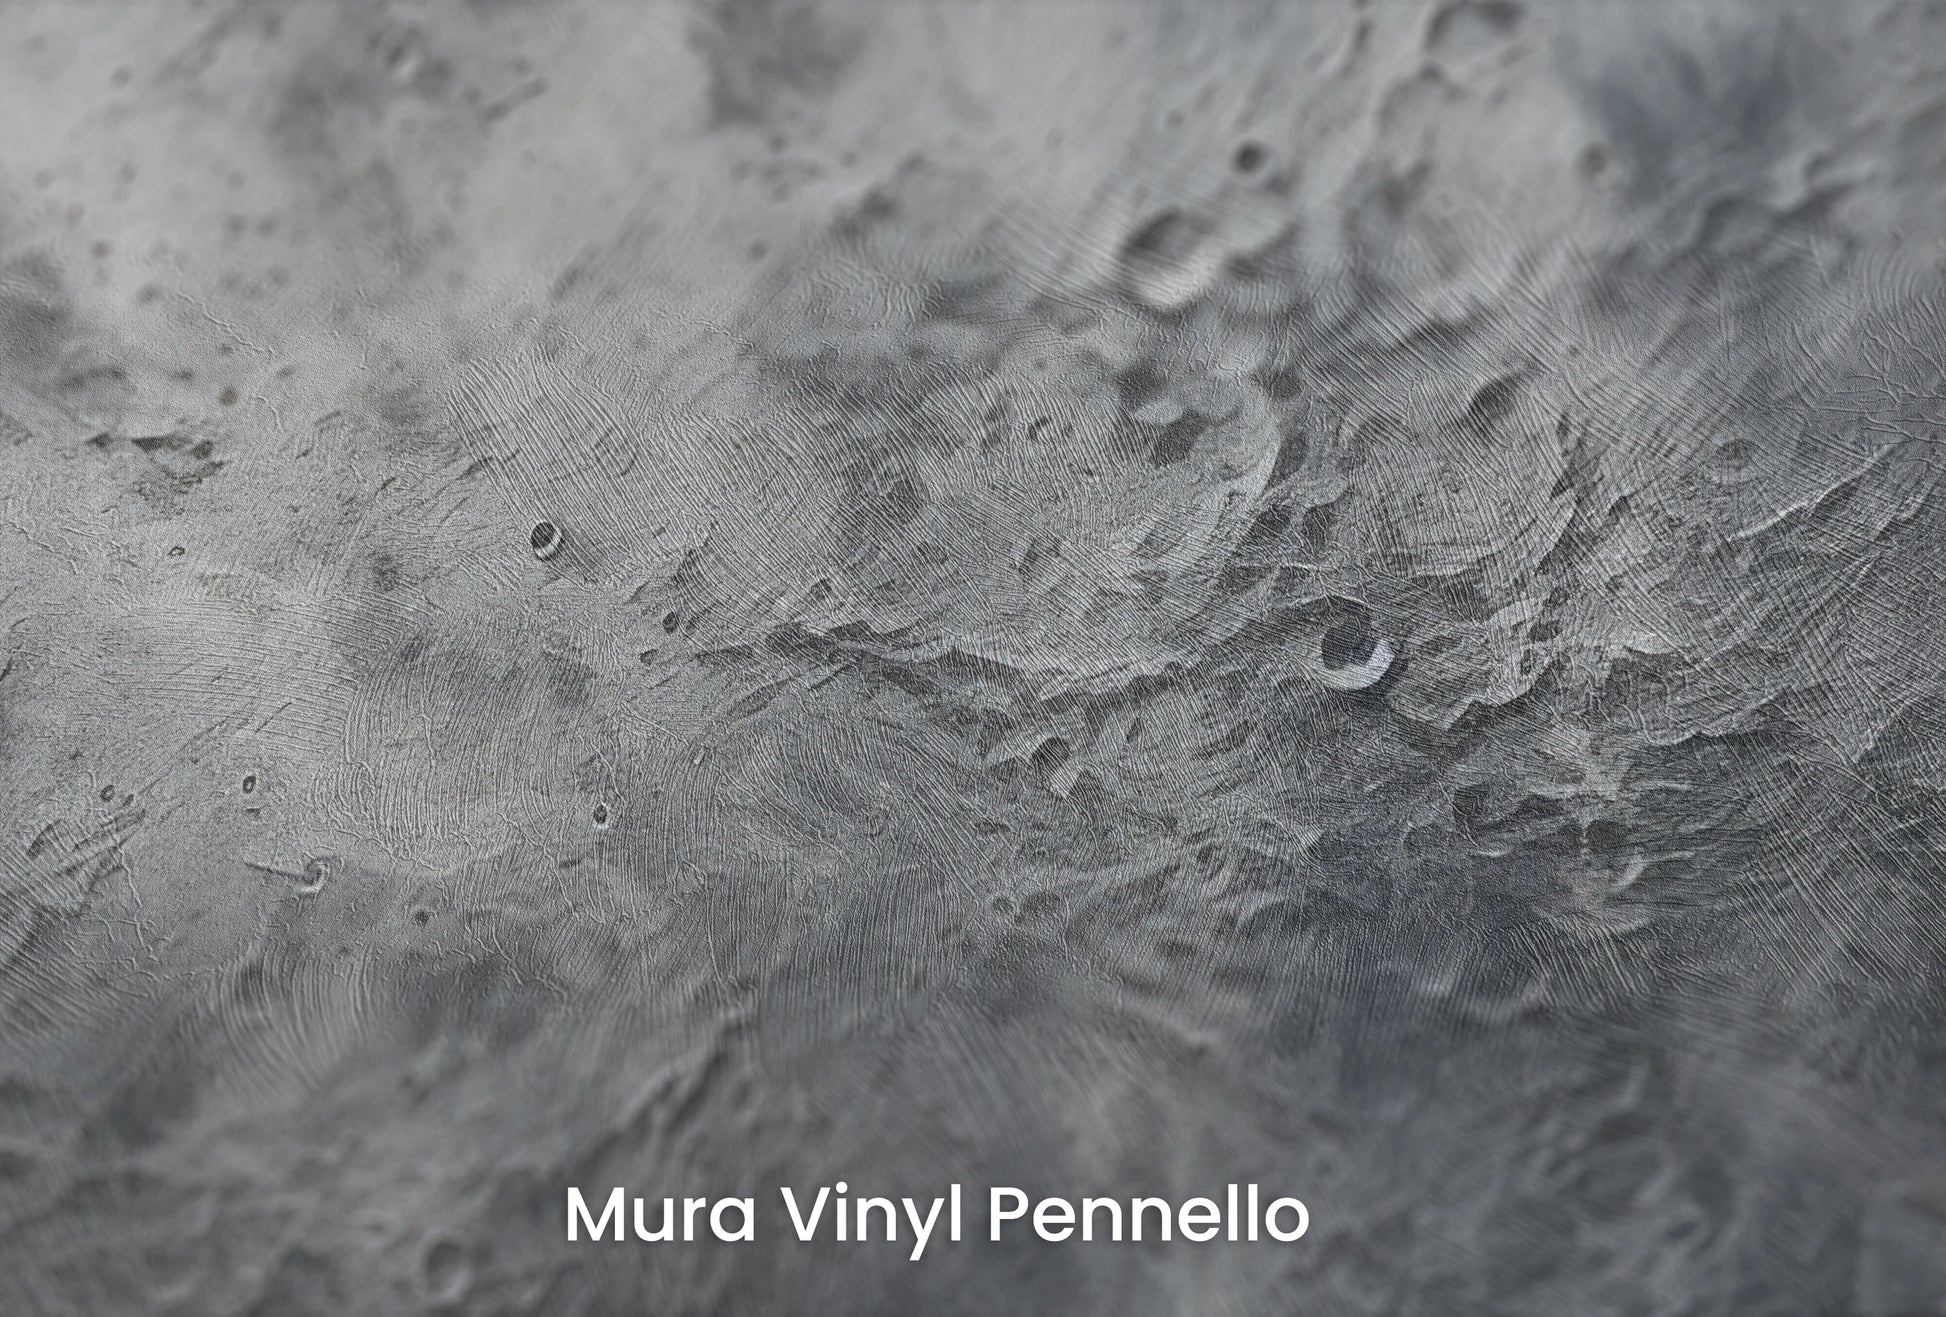 Zbliżenie na artystyczną fototapetę o nazwie Cratered Terrain na podłożu Mura Vinyl Pennello - faktura pociągnięć pędzla malarskiego.